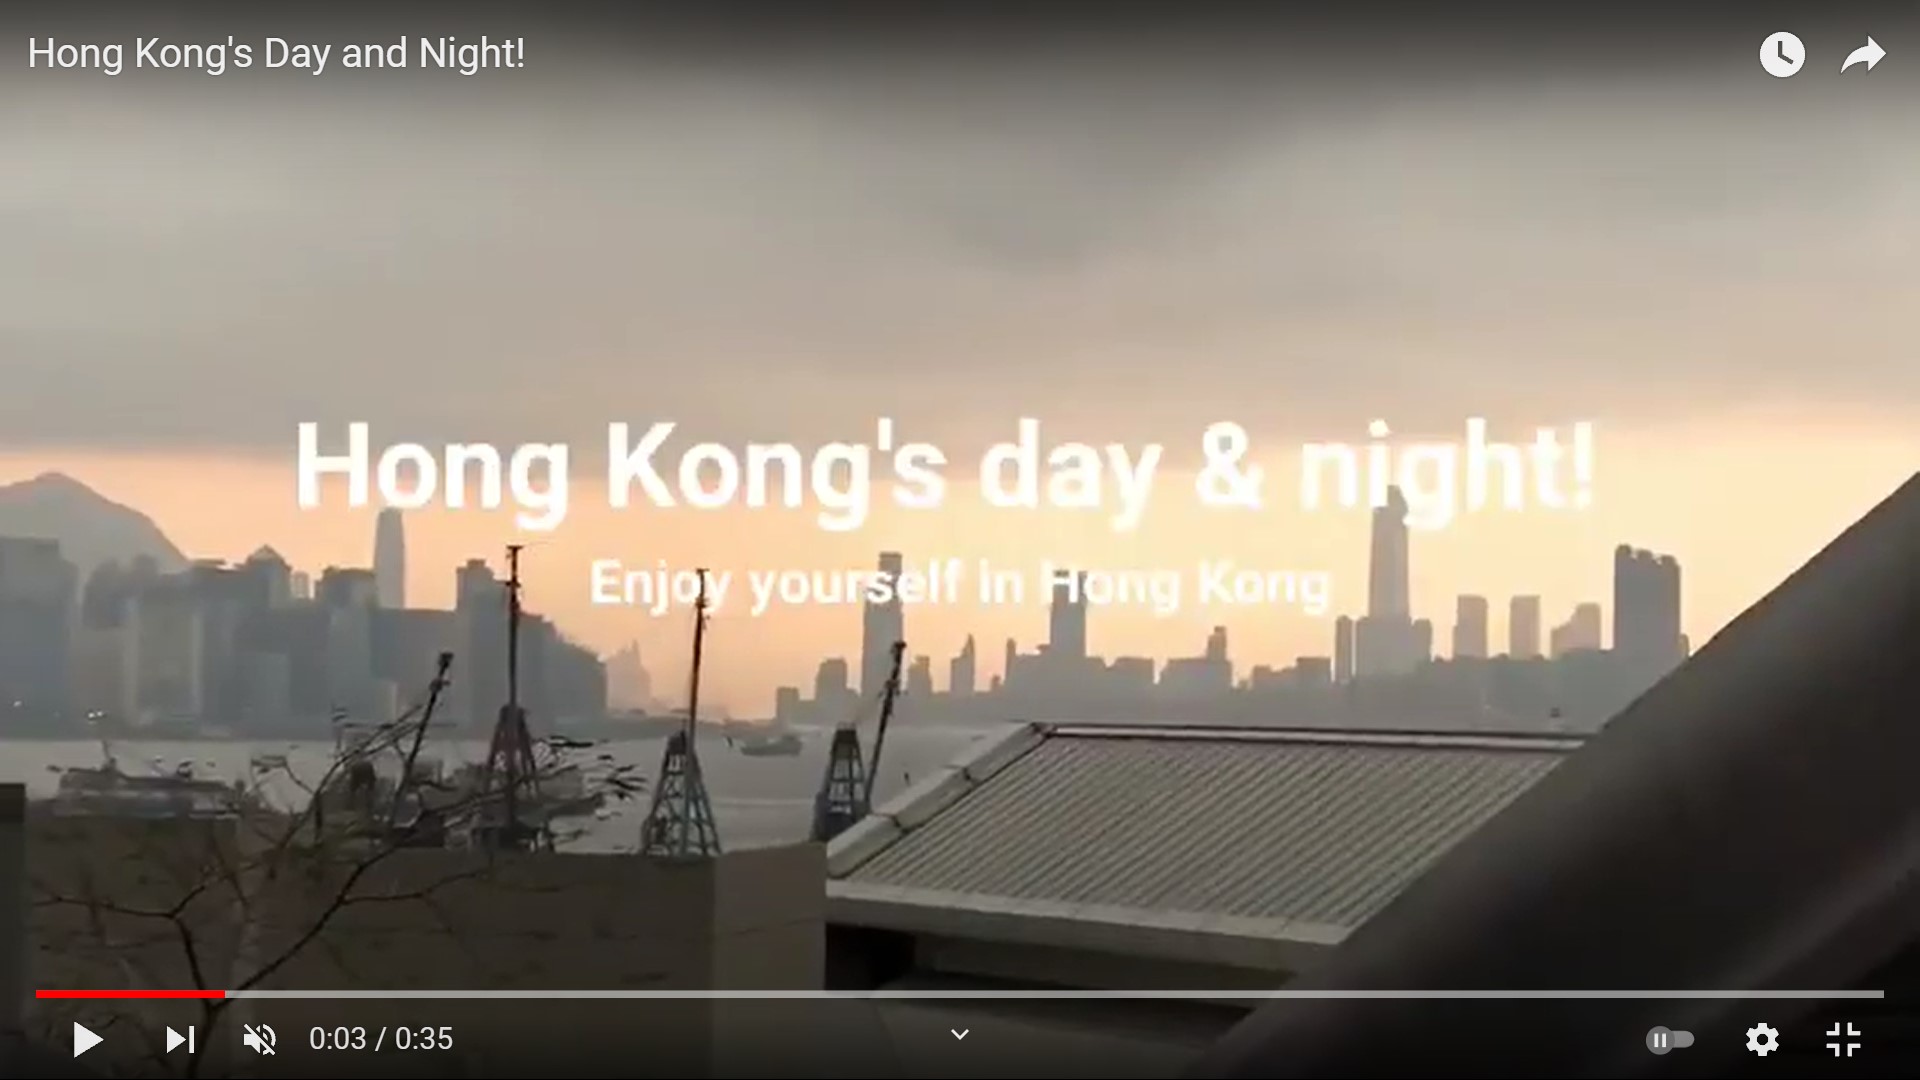 Frank's "Hong Kong's Day and Night" snapshots video